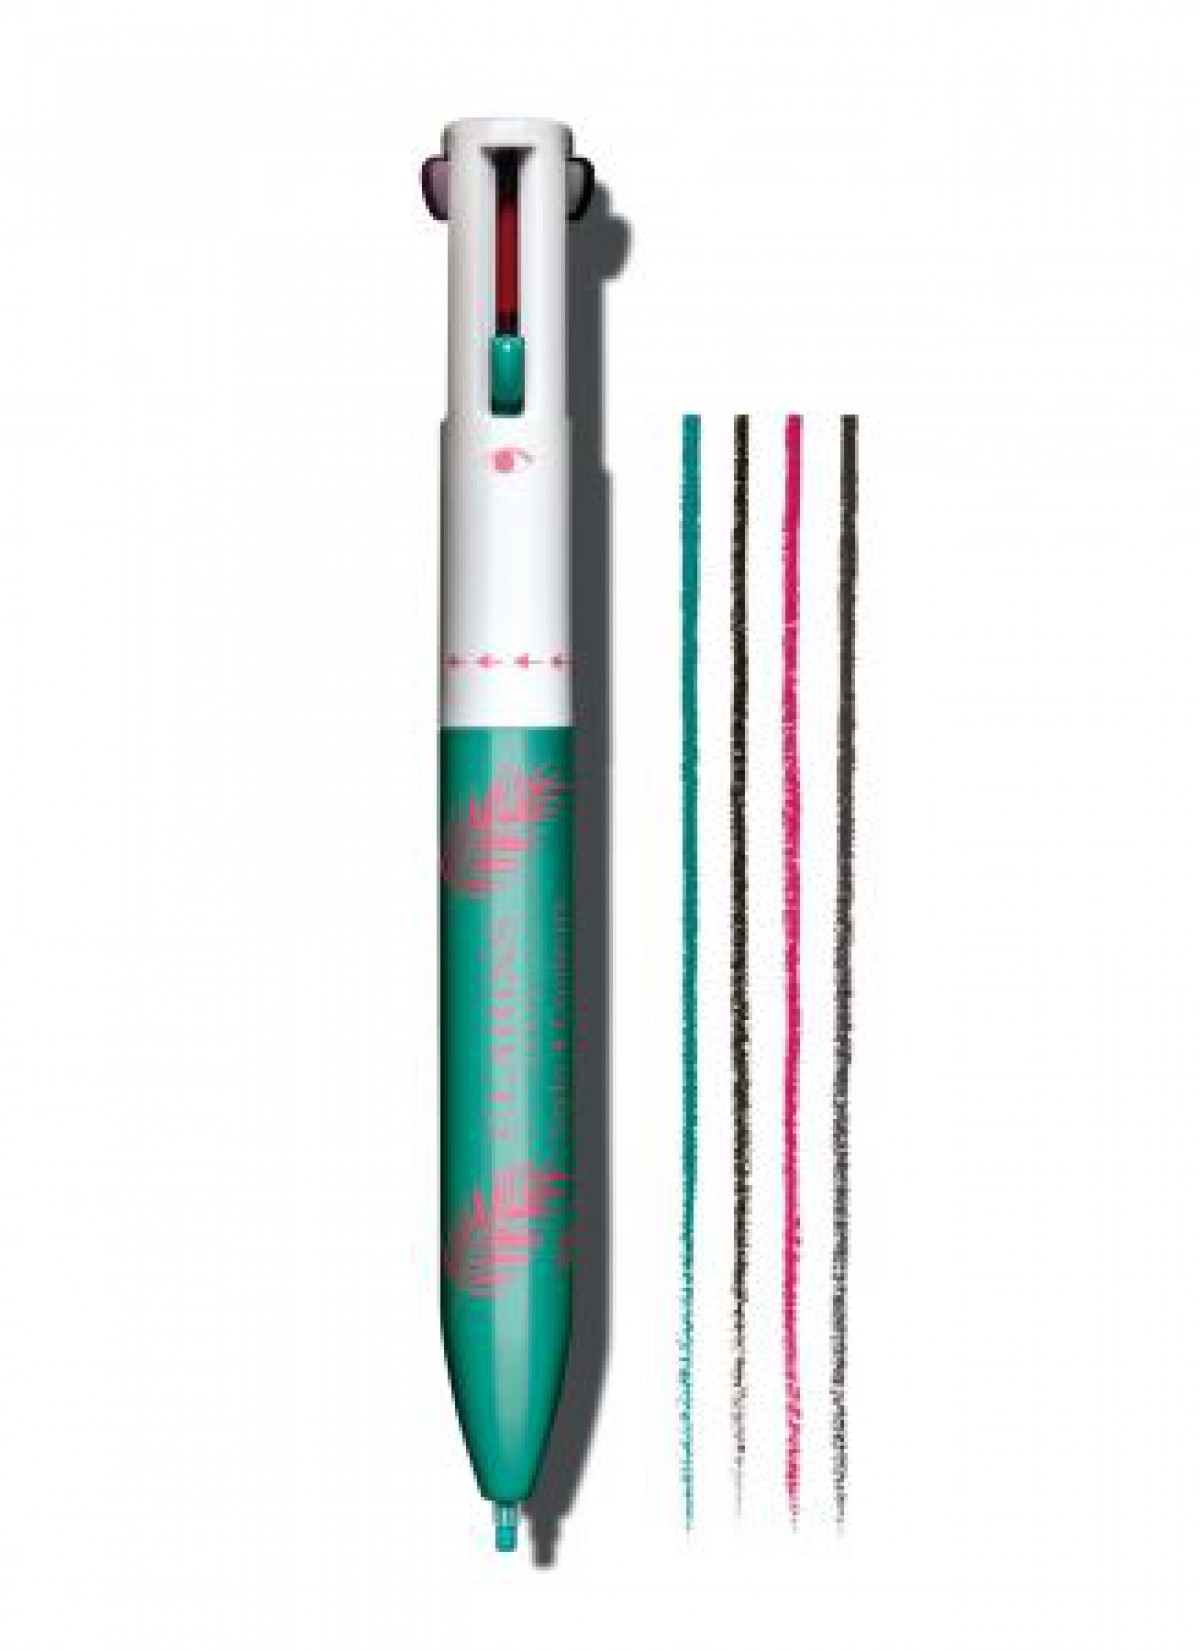 「文房具にそっくりな4色ボールペン型コスメ」新色を発売/クラランス